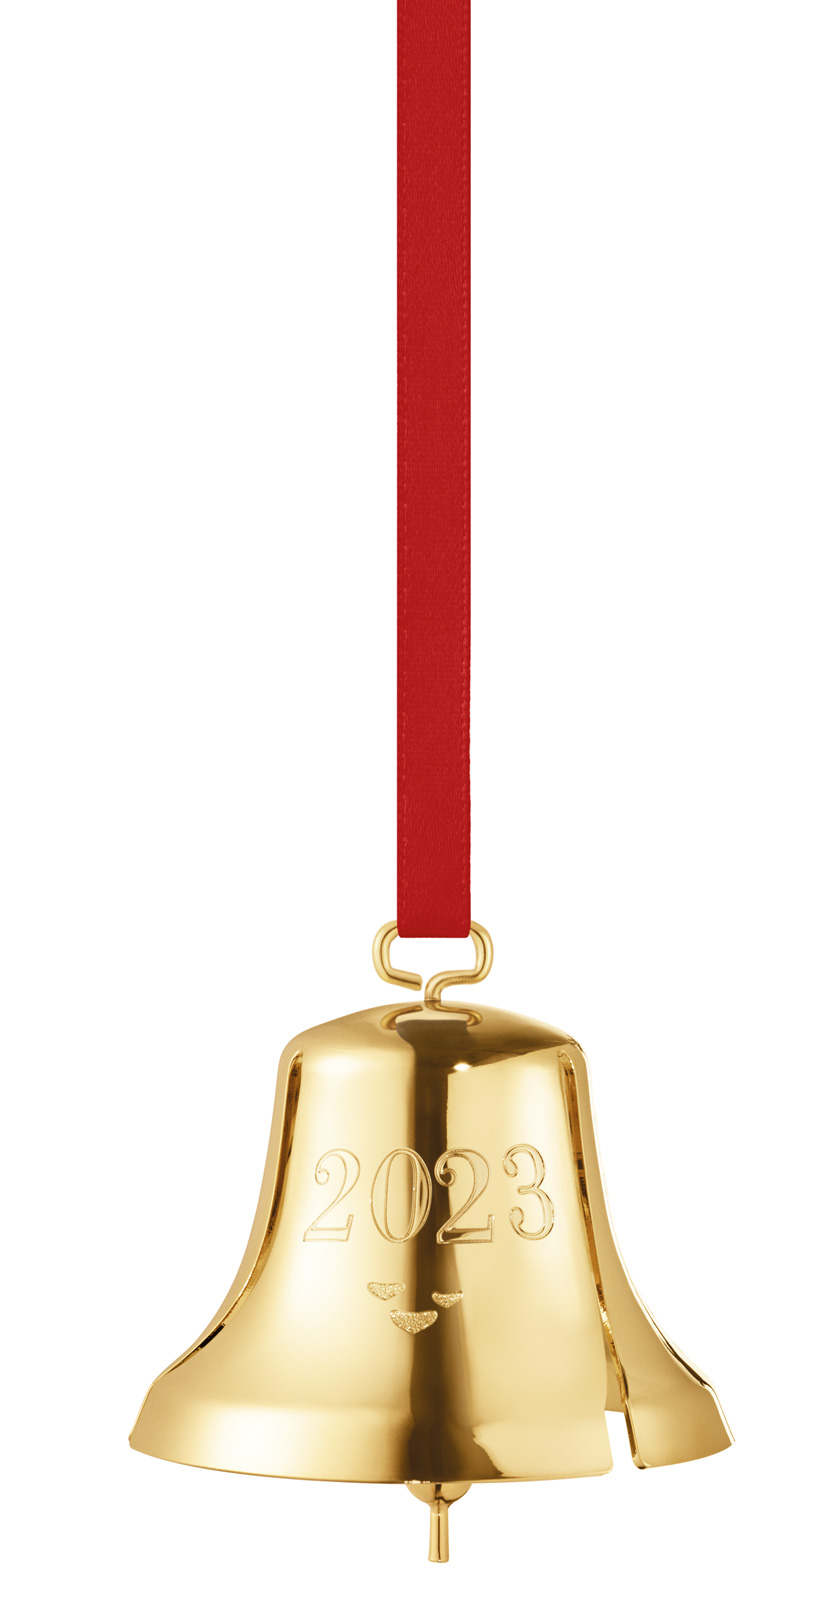 Georg Jensen 2023 Weihnachtsornament Glocke gold